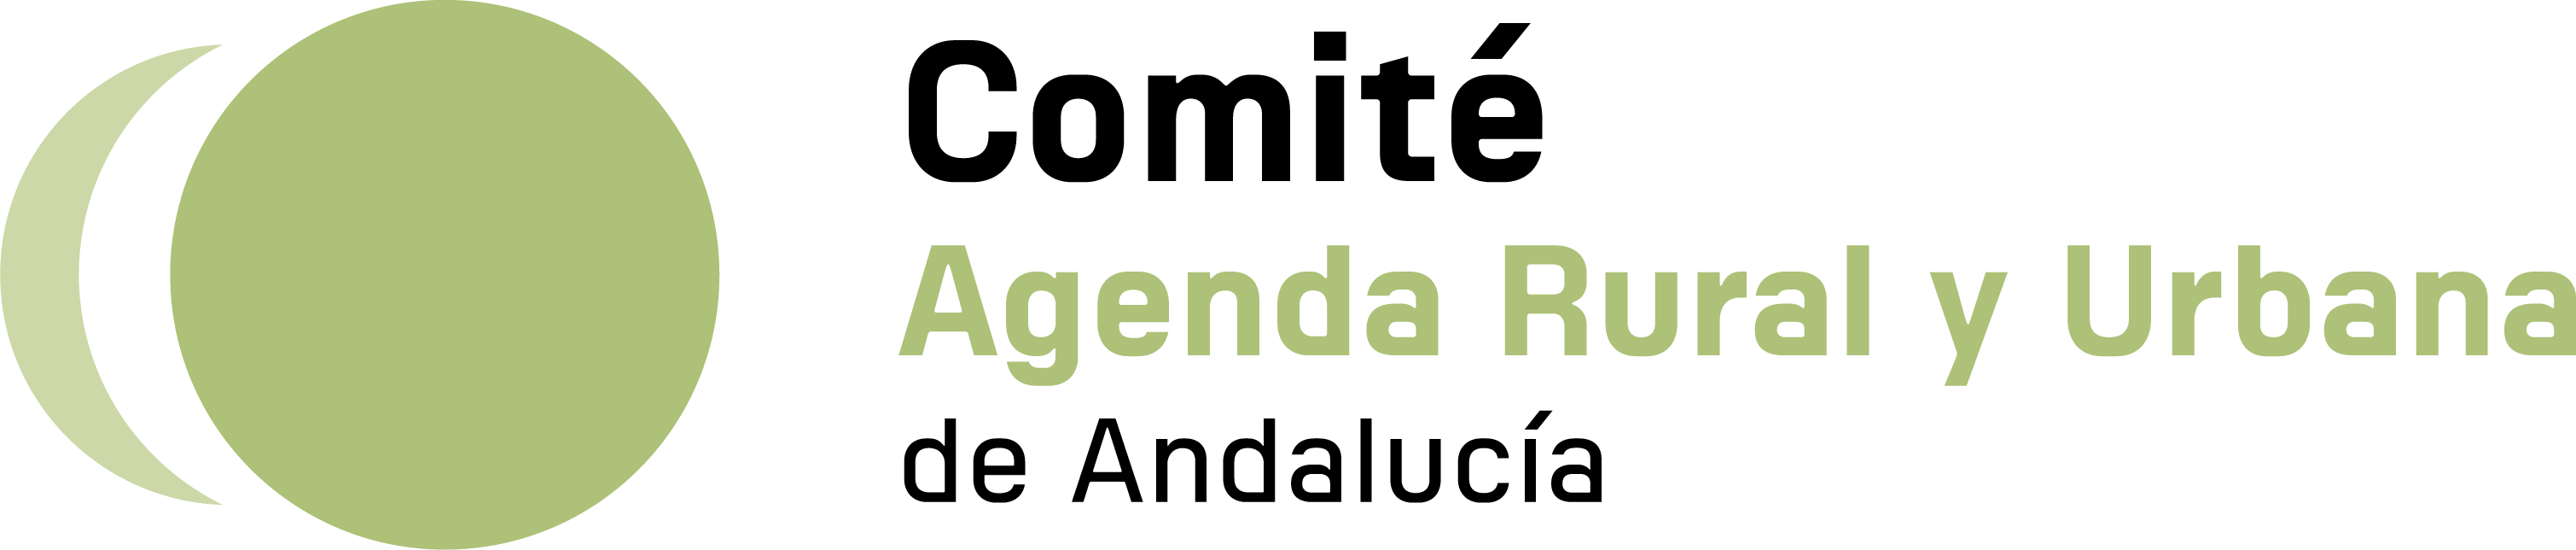 Agenda Rural y Urbana de Andalucía